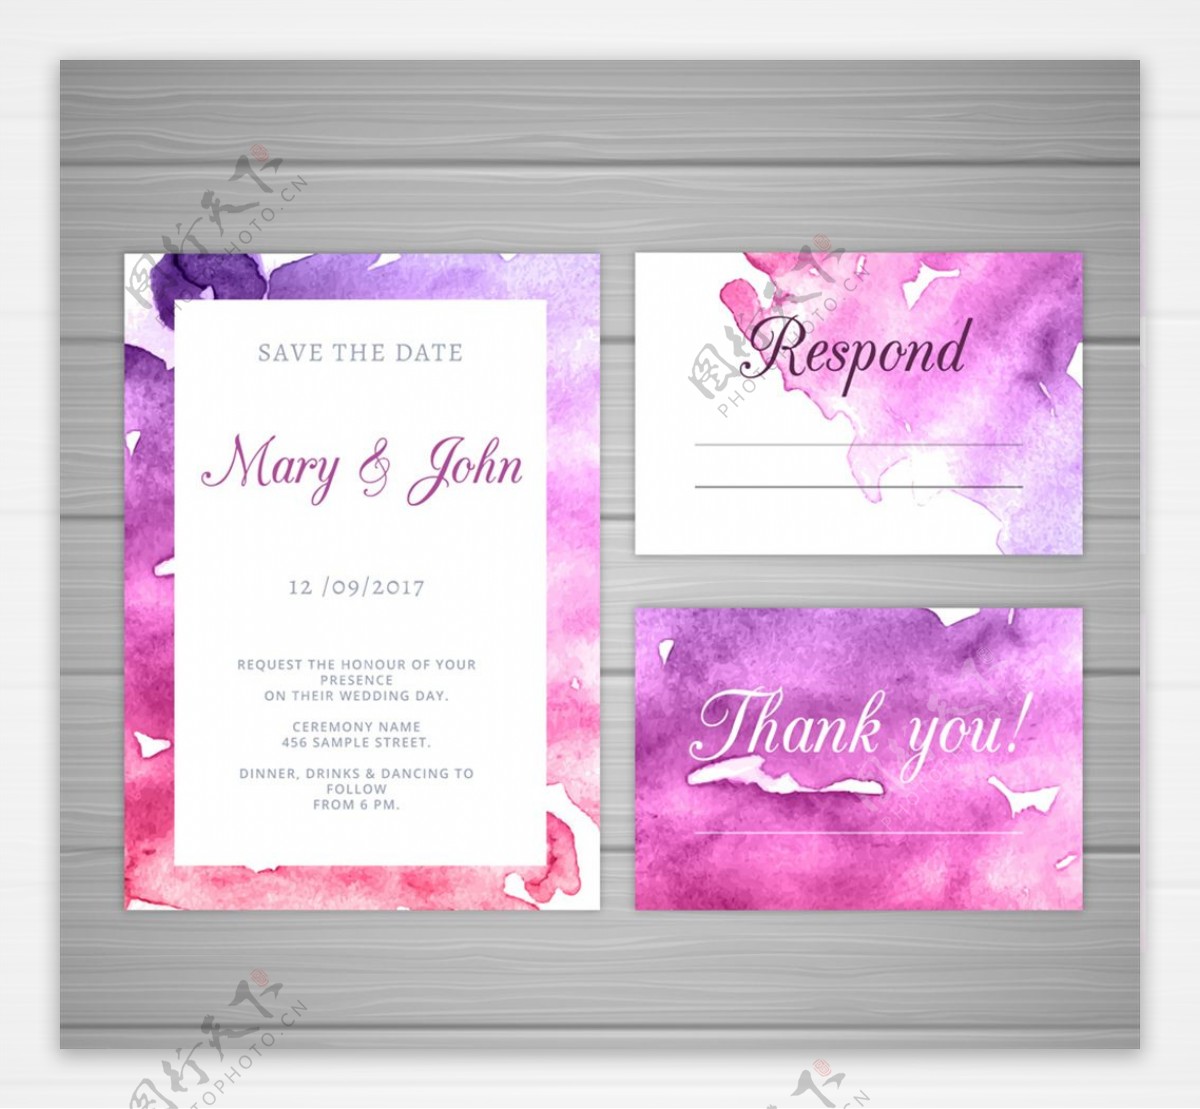 3款紫色水彩绘婚礼邀请卡矢量图